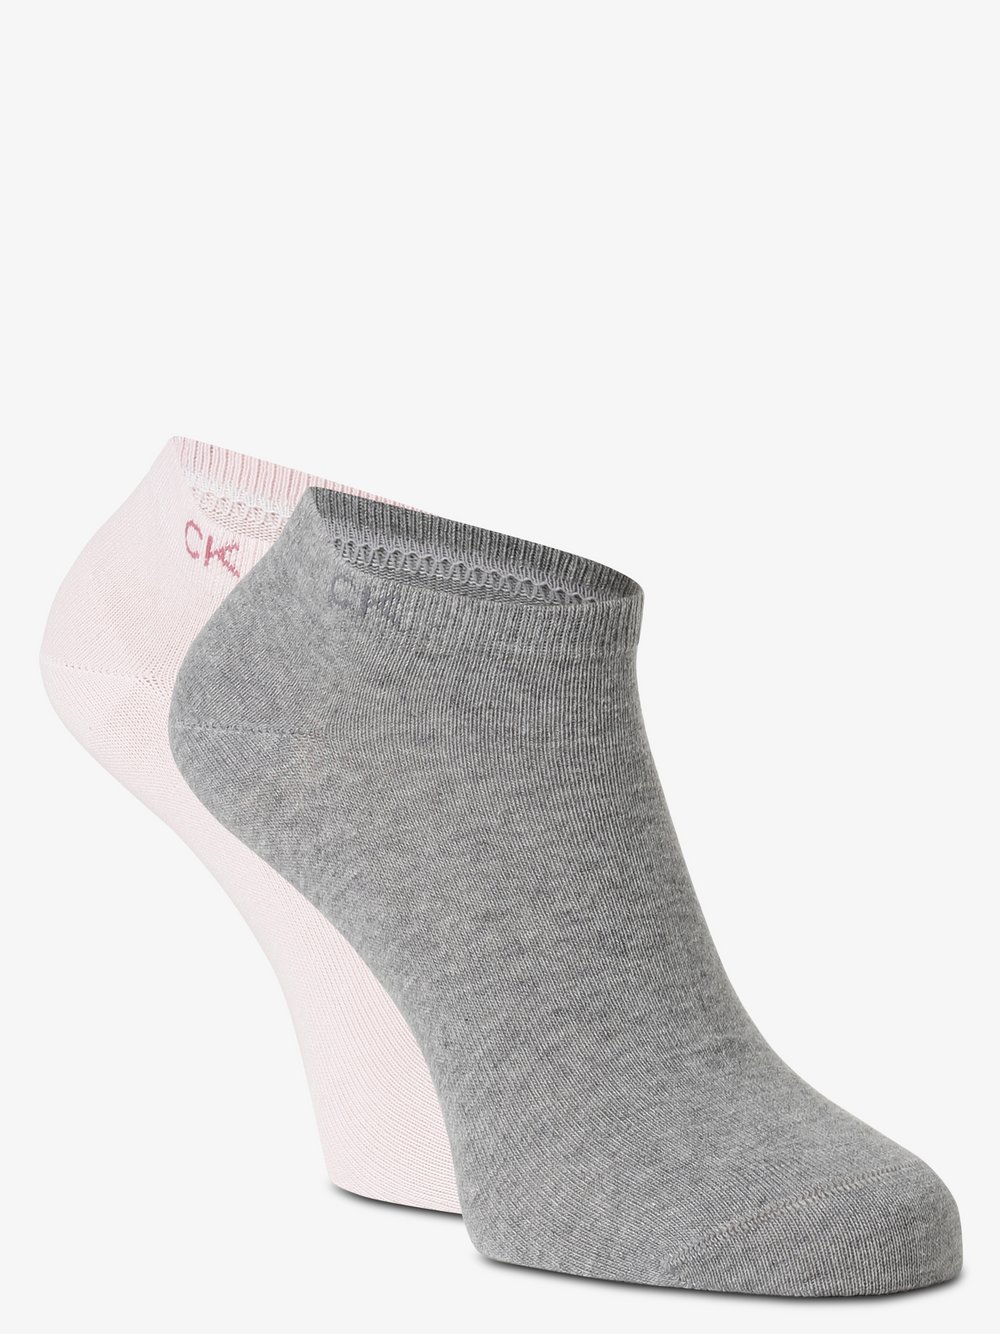 Calvin Klein - Damskie skarpety do obuwia sportowego pakowane po 2 szt., szary|różowy